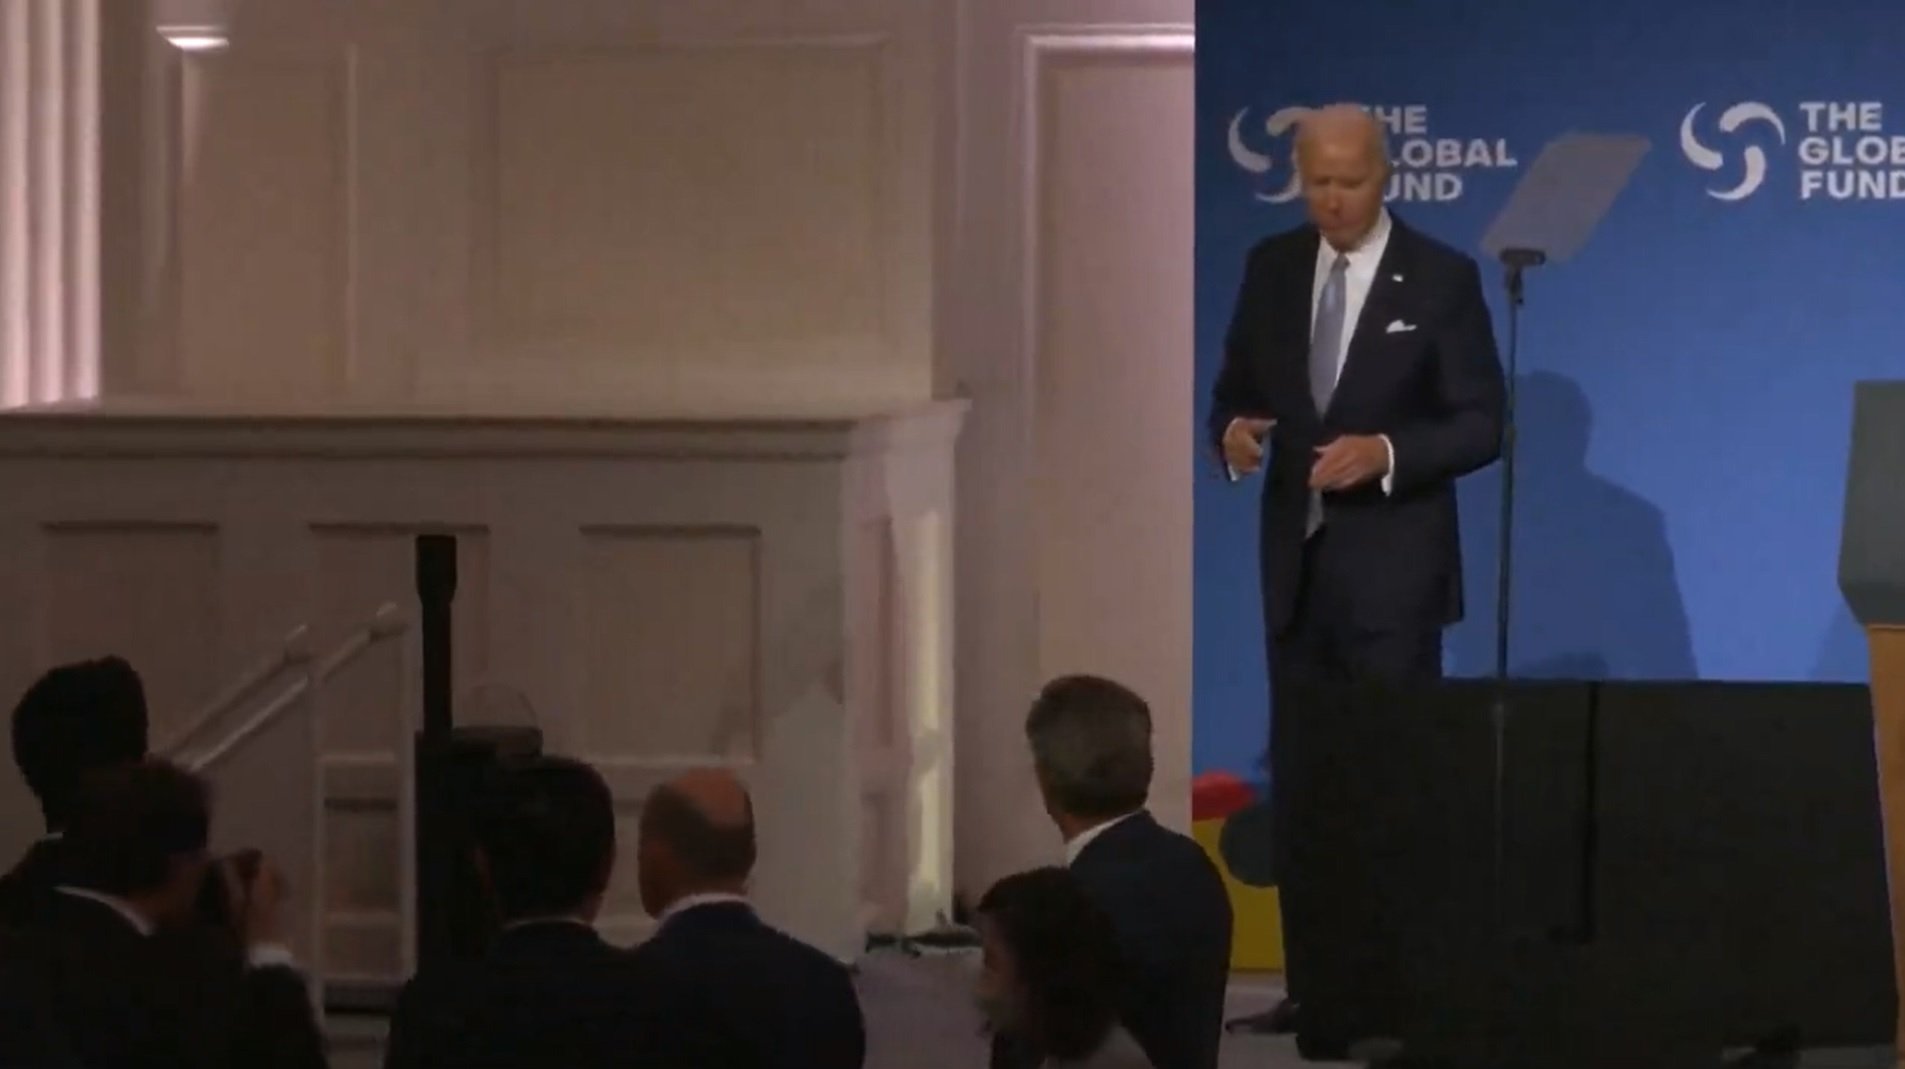 Saltan las alarmas: Joe Biden visiblemente desorientado durante un acto de la ONU